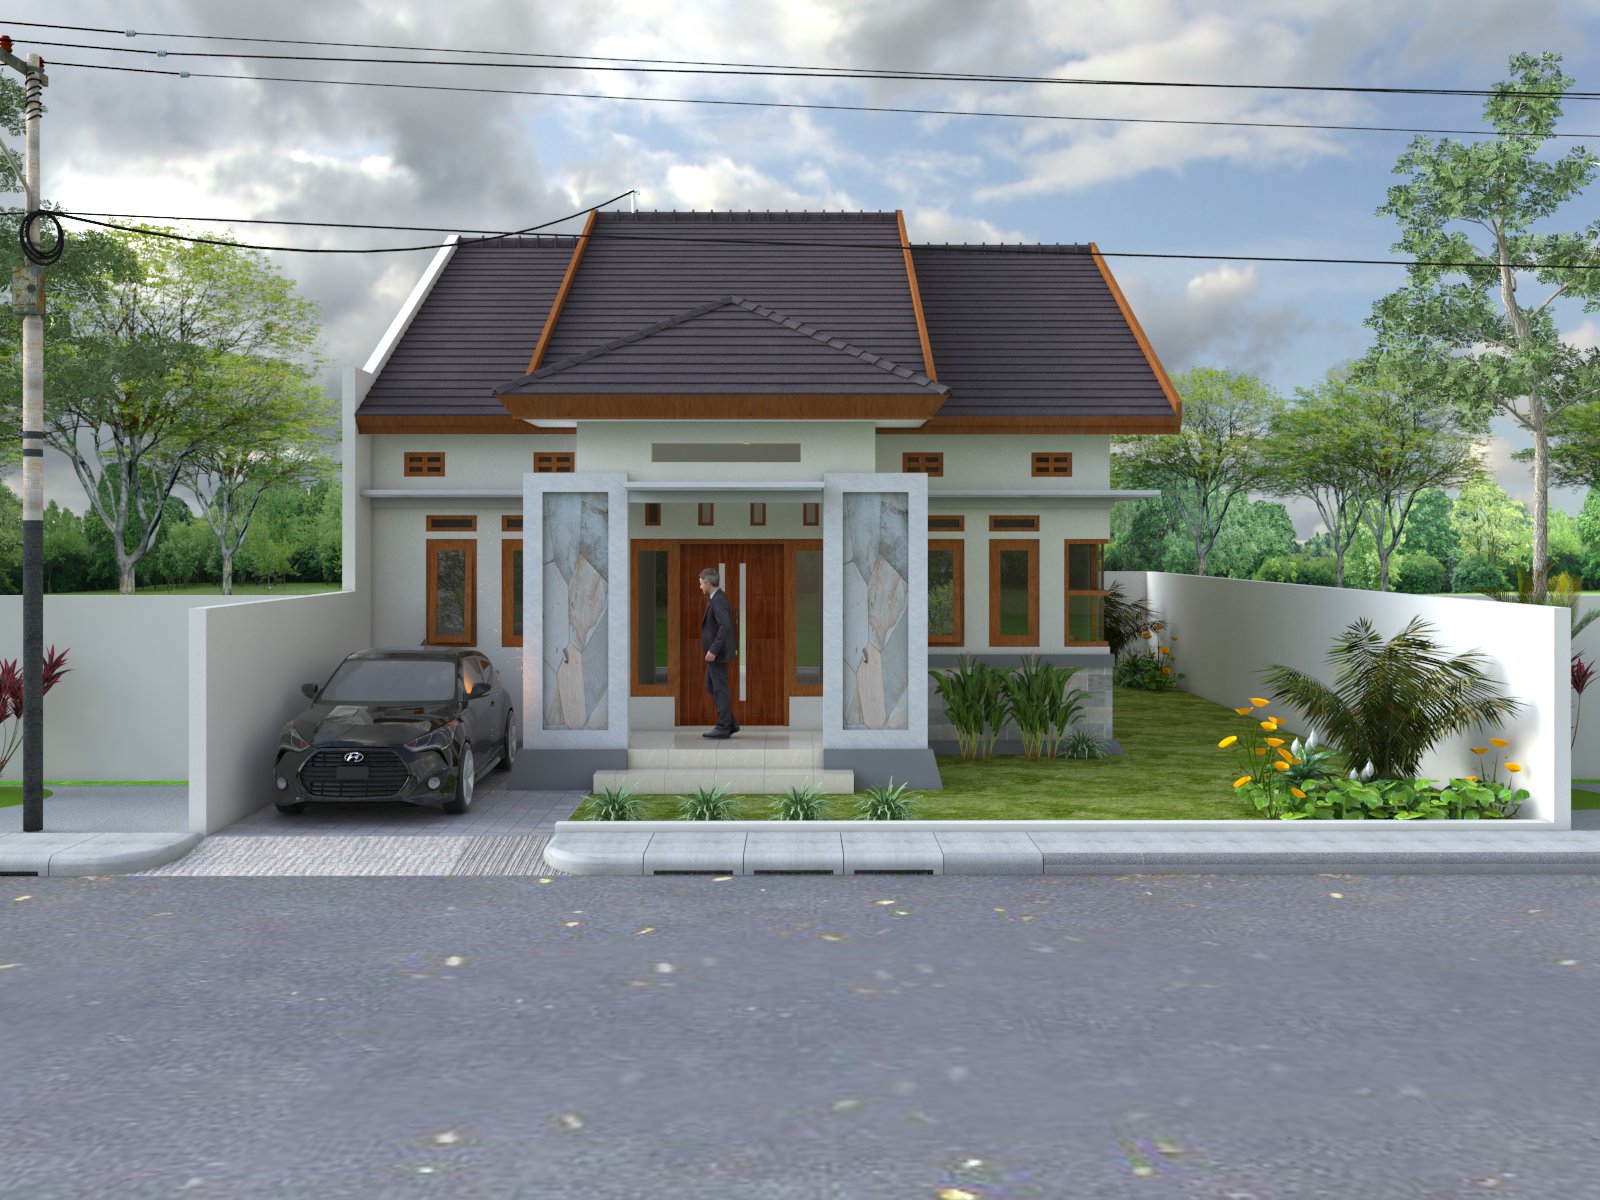 Lt1 41 Desain Rumah Minimalis 1 Lantai Bpk Yudi Di Propinsi Aceh